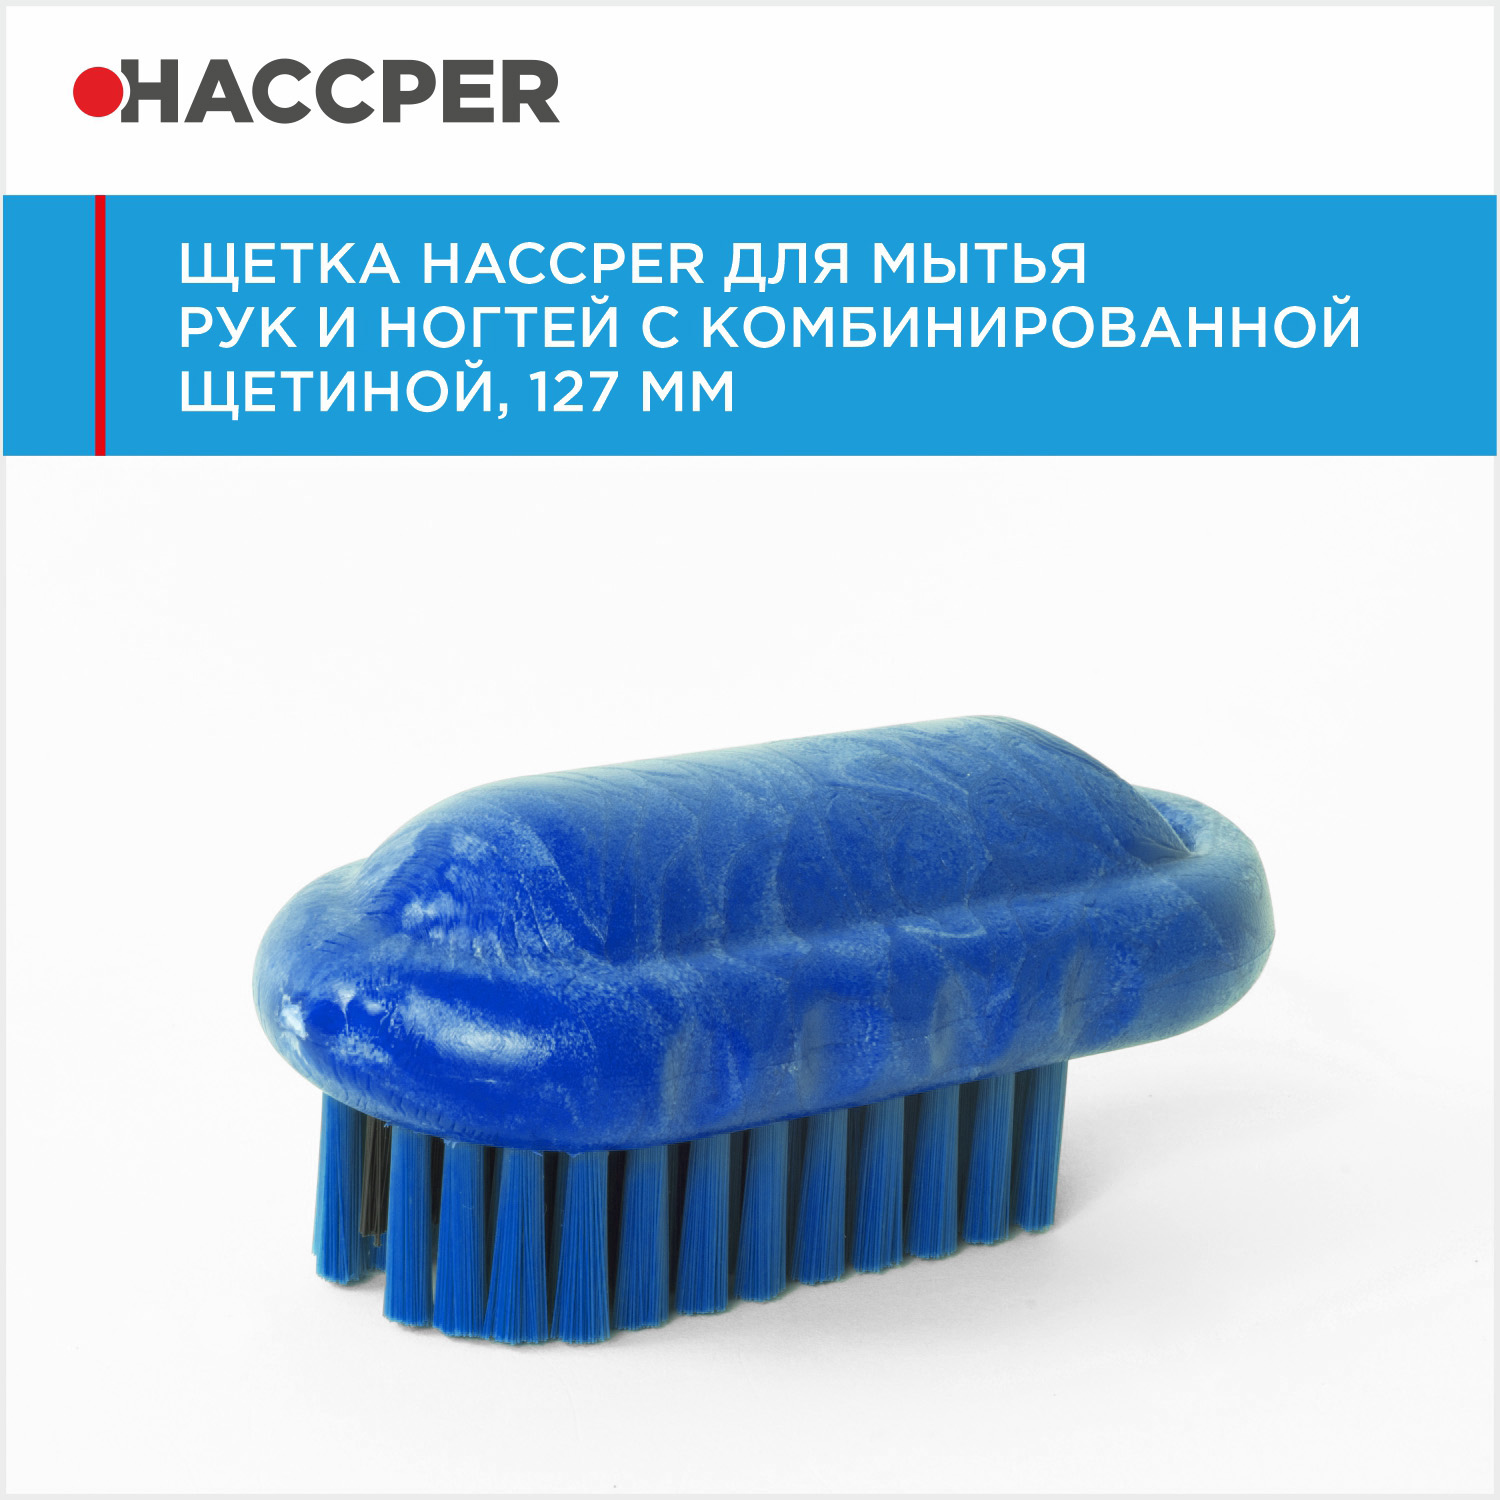 Щетка HACCPER для мытья рук и ногтей с комбинированной щетиной, 127 мм, синяя